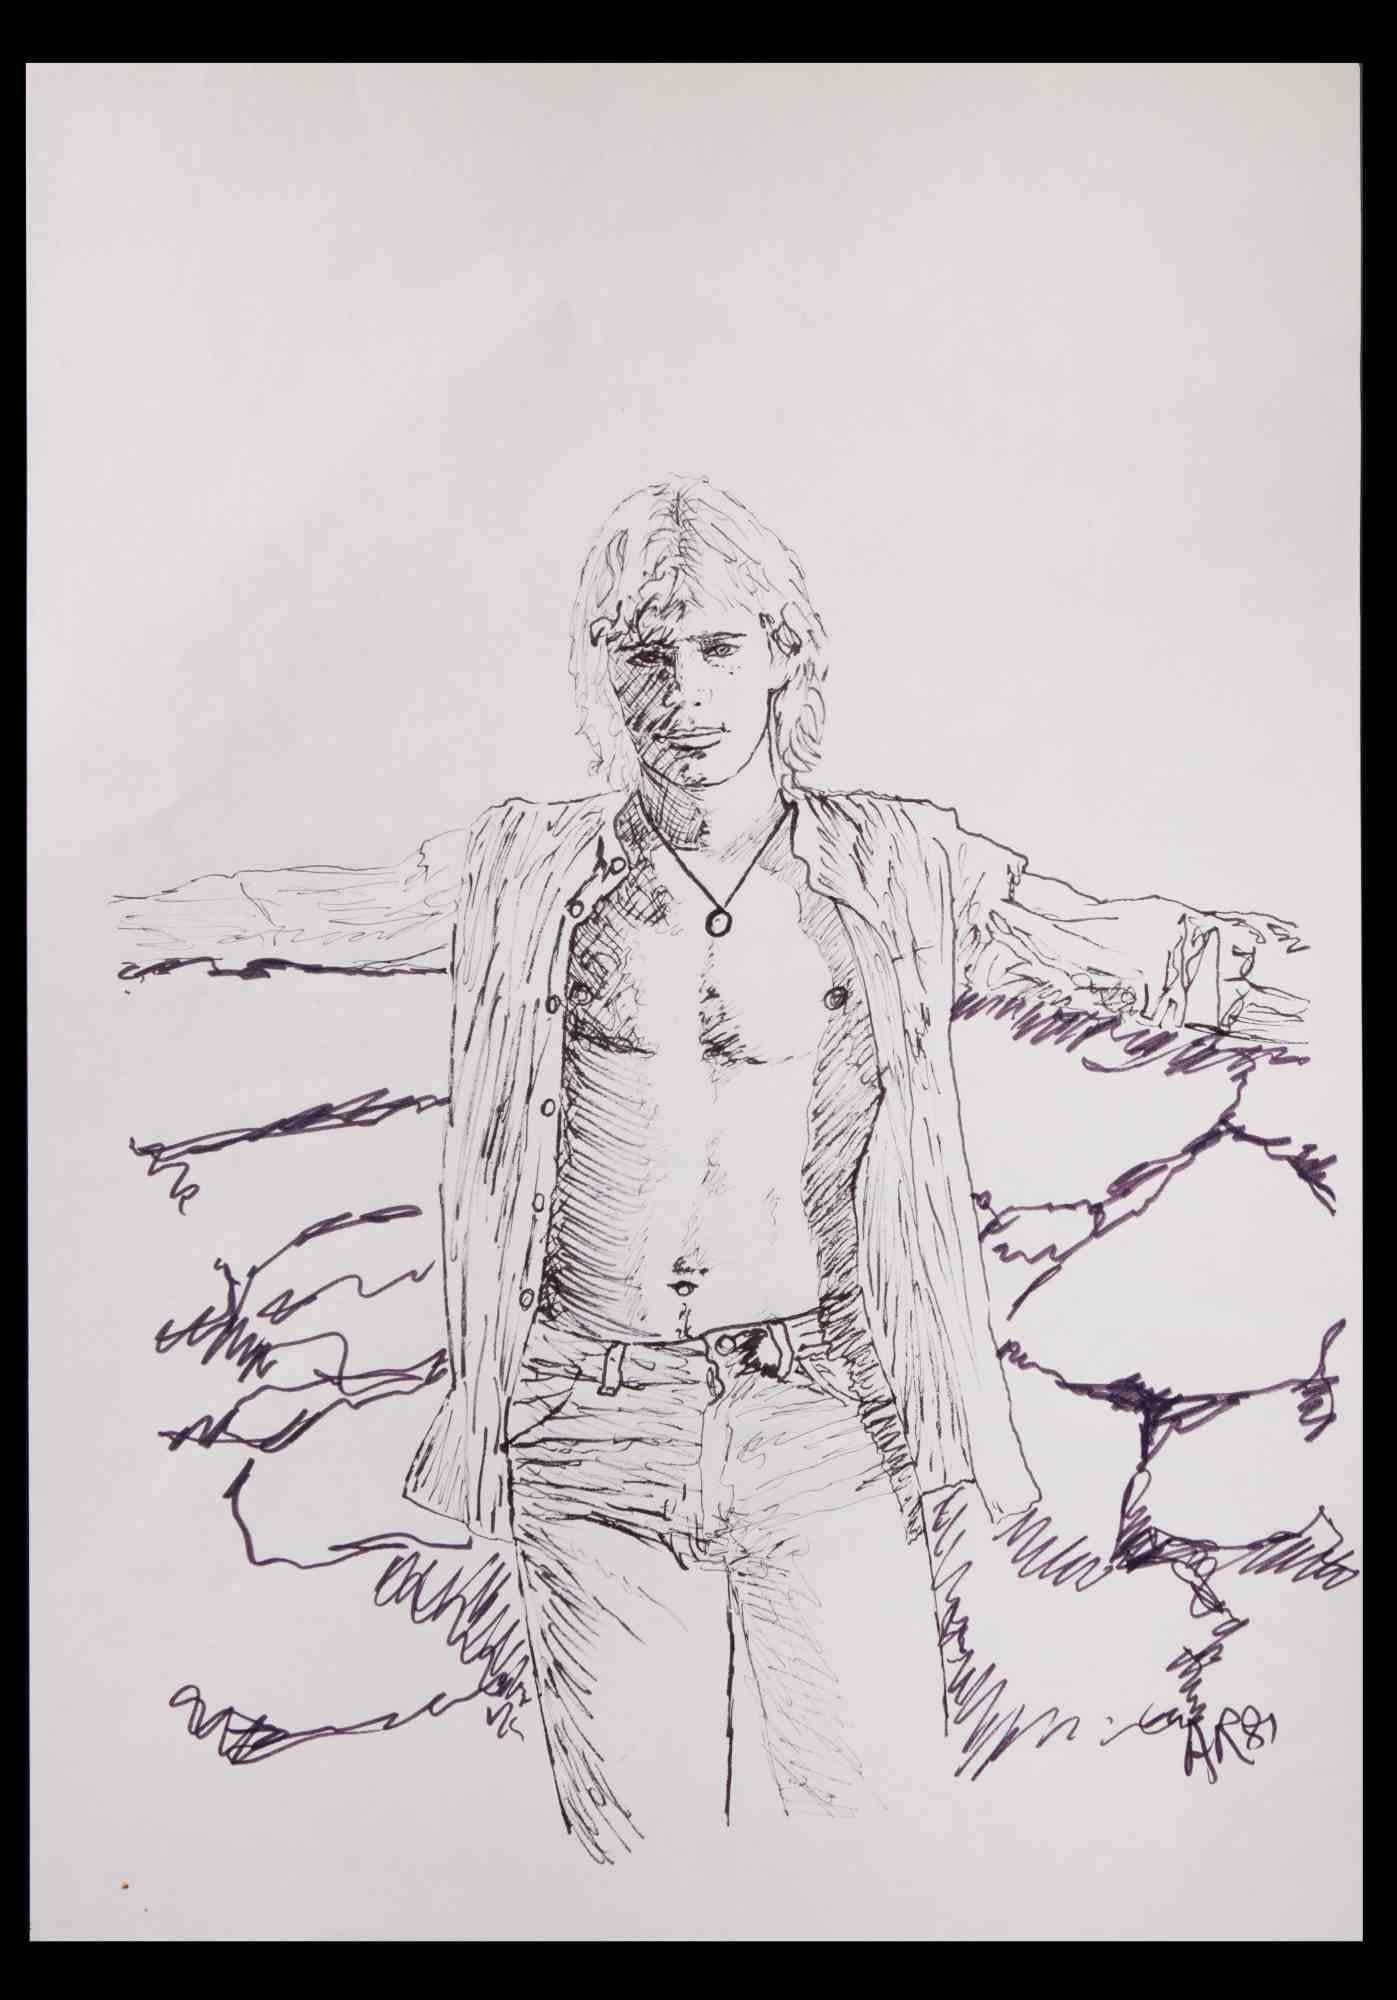 Porträt eines Jungen - Originalzeichnung von Anthony Roaland - 1980